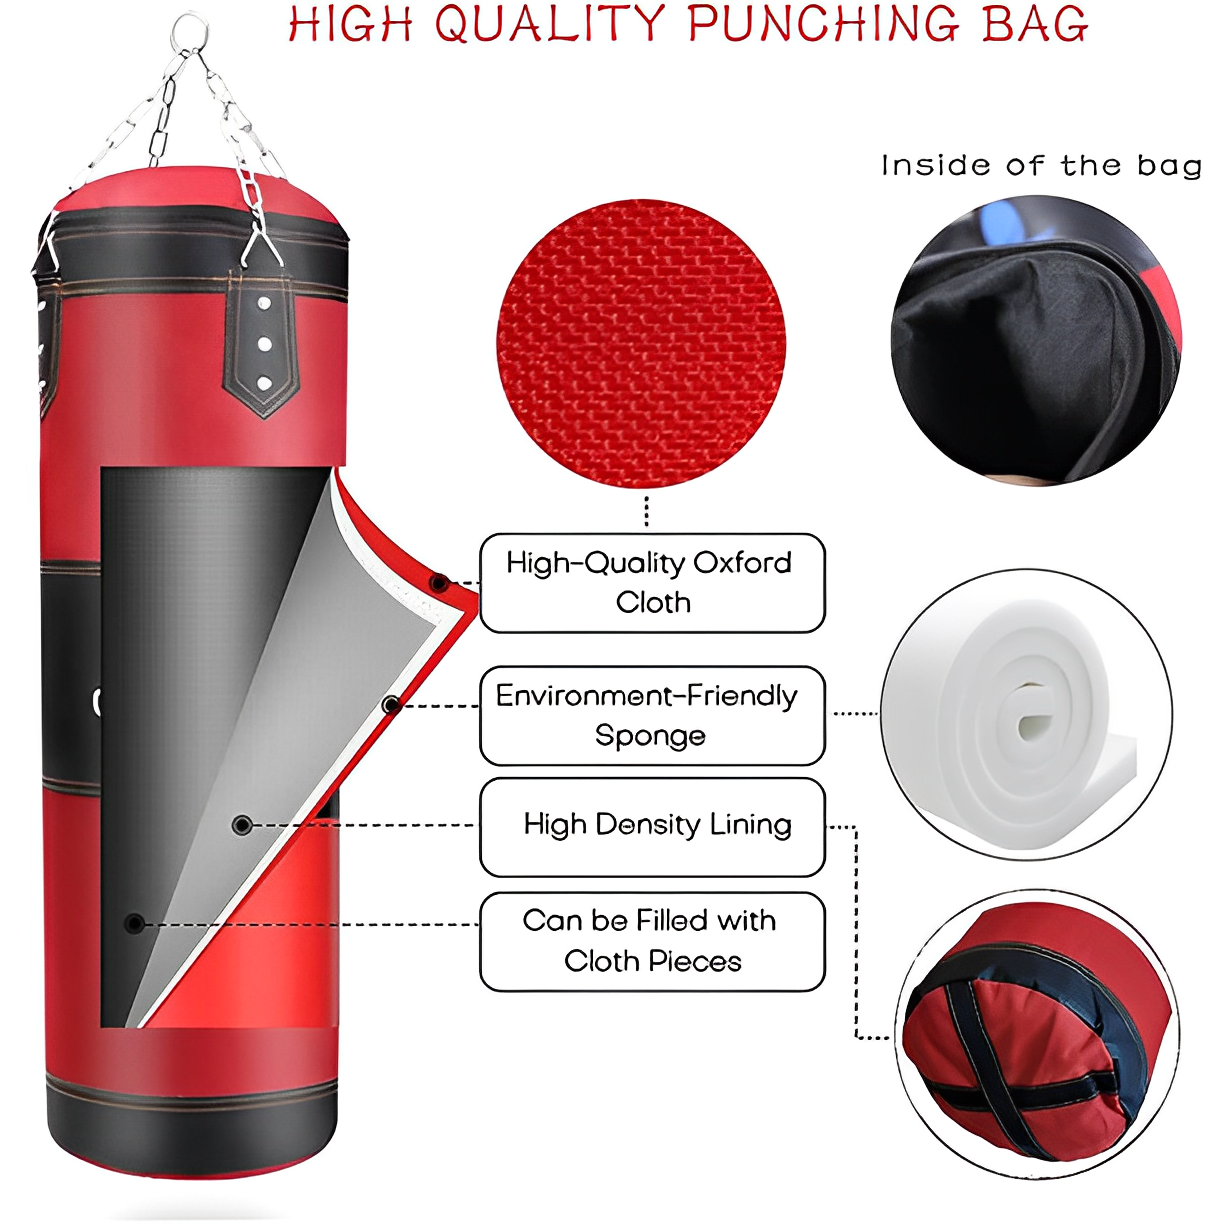 Premium Punching Bag